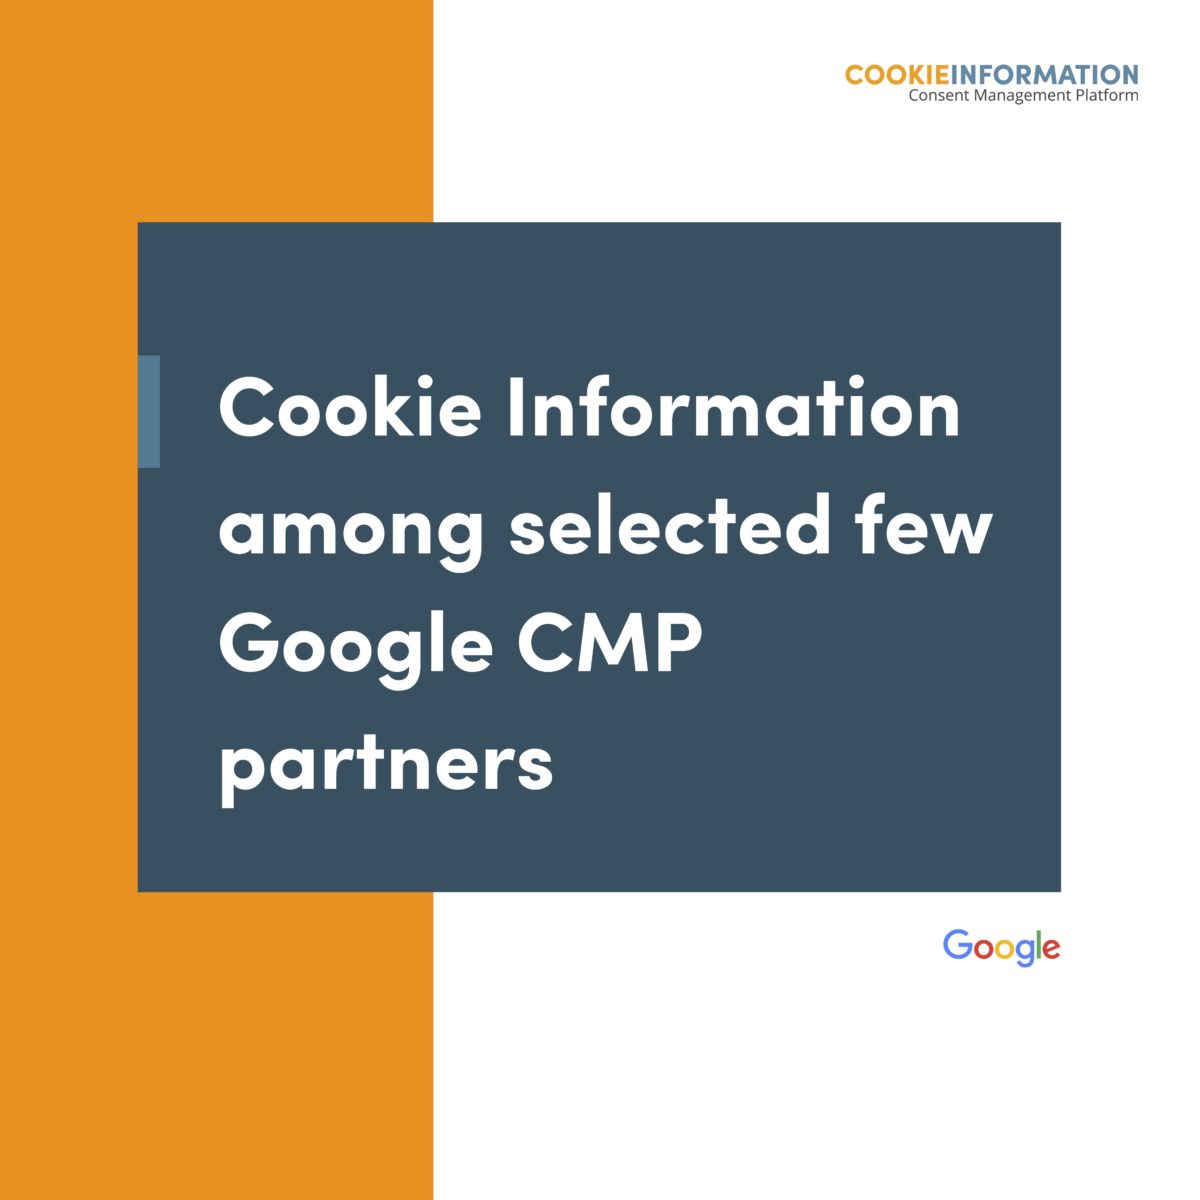 Cookie Information blandt få udvalgte Google Consent Management Platform Partnere